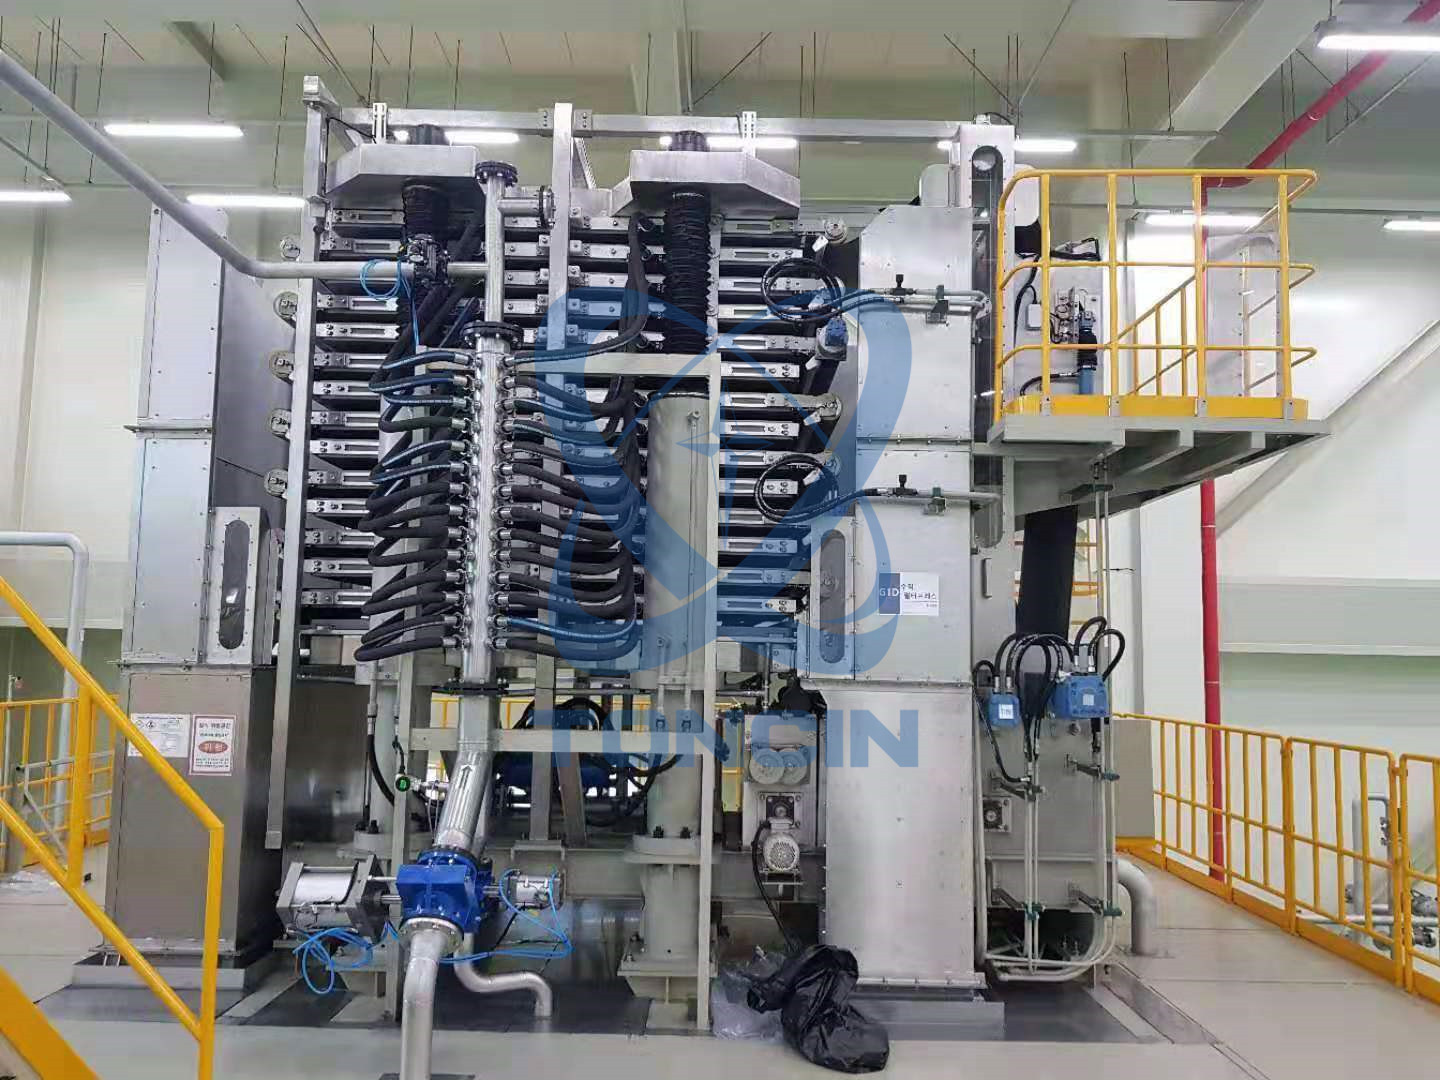 Filtro prensa vertical de torre em fábrica chinesa